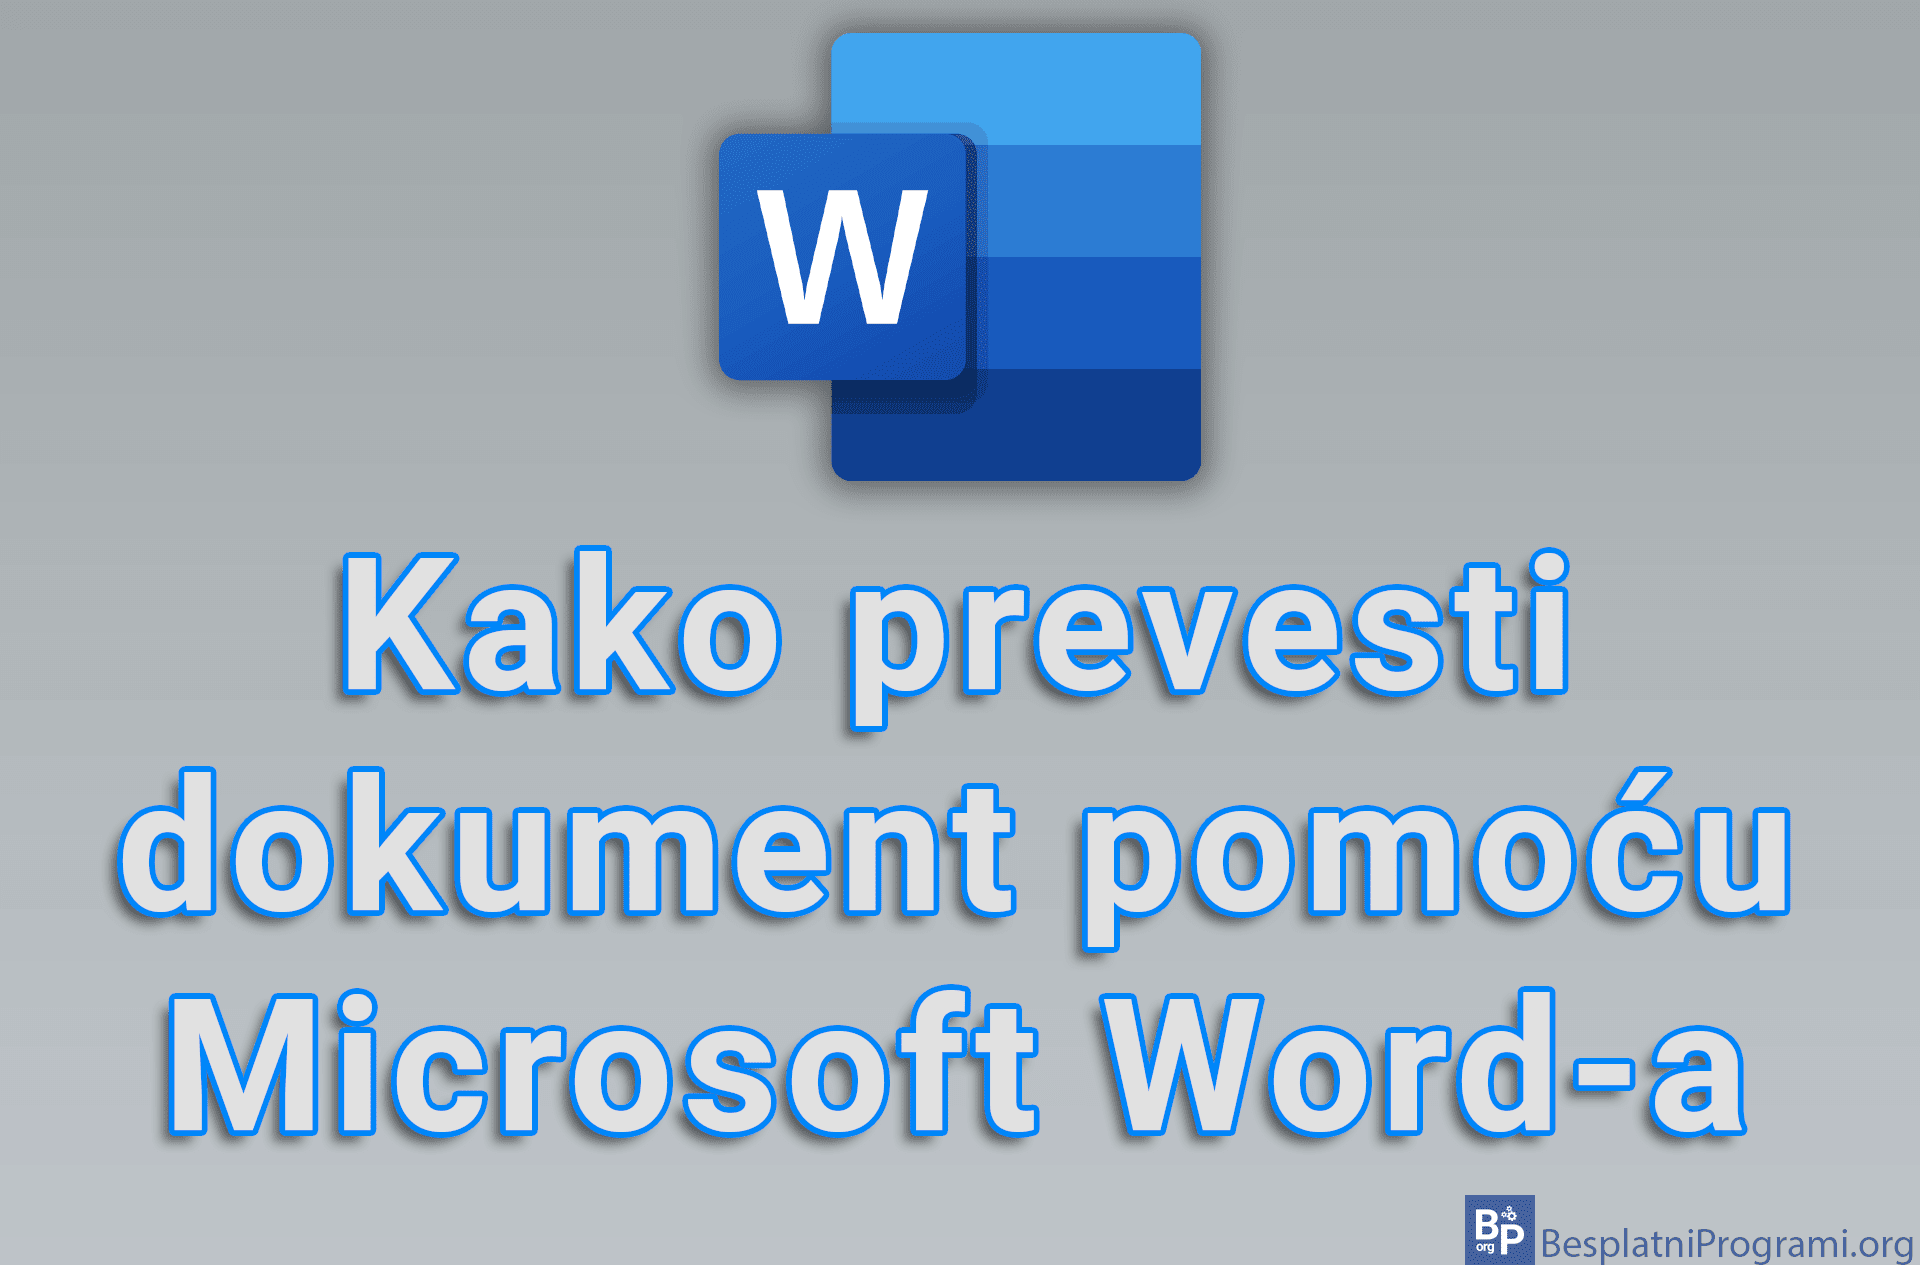 Kako prevesti dokument pomoću Microsoft Word-a